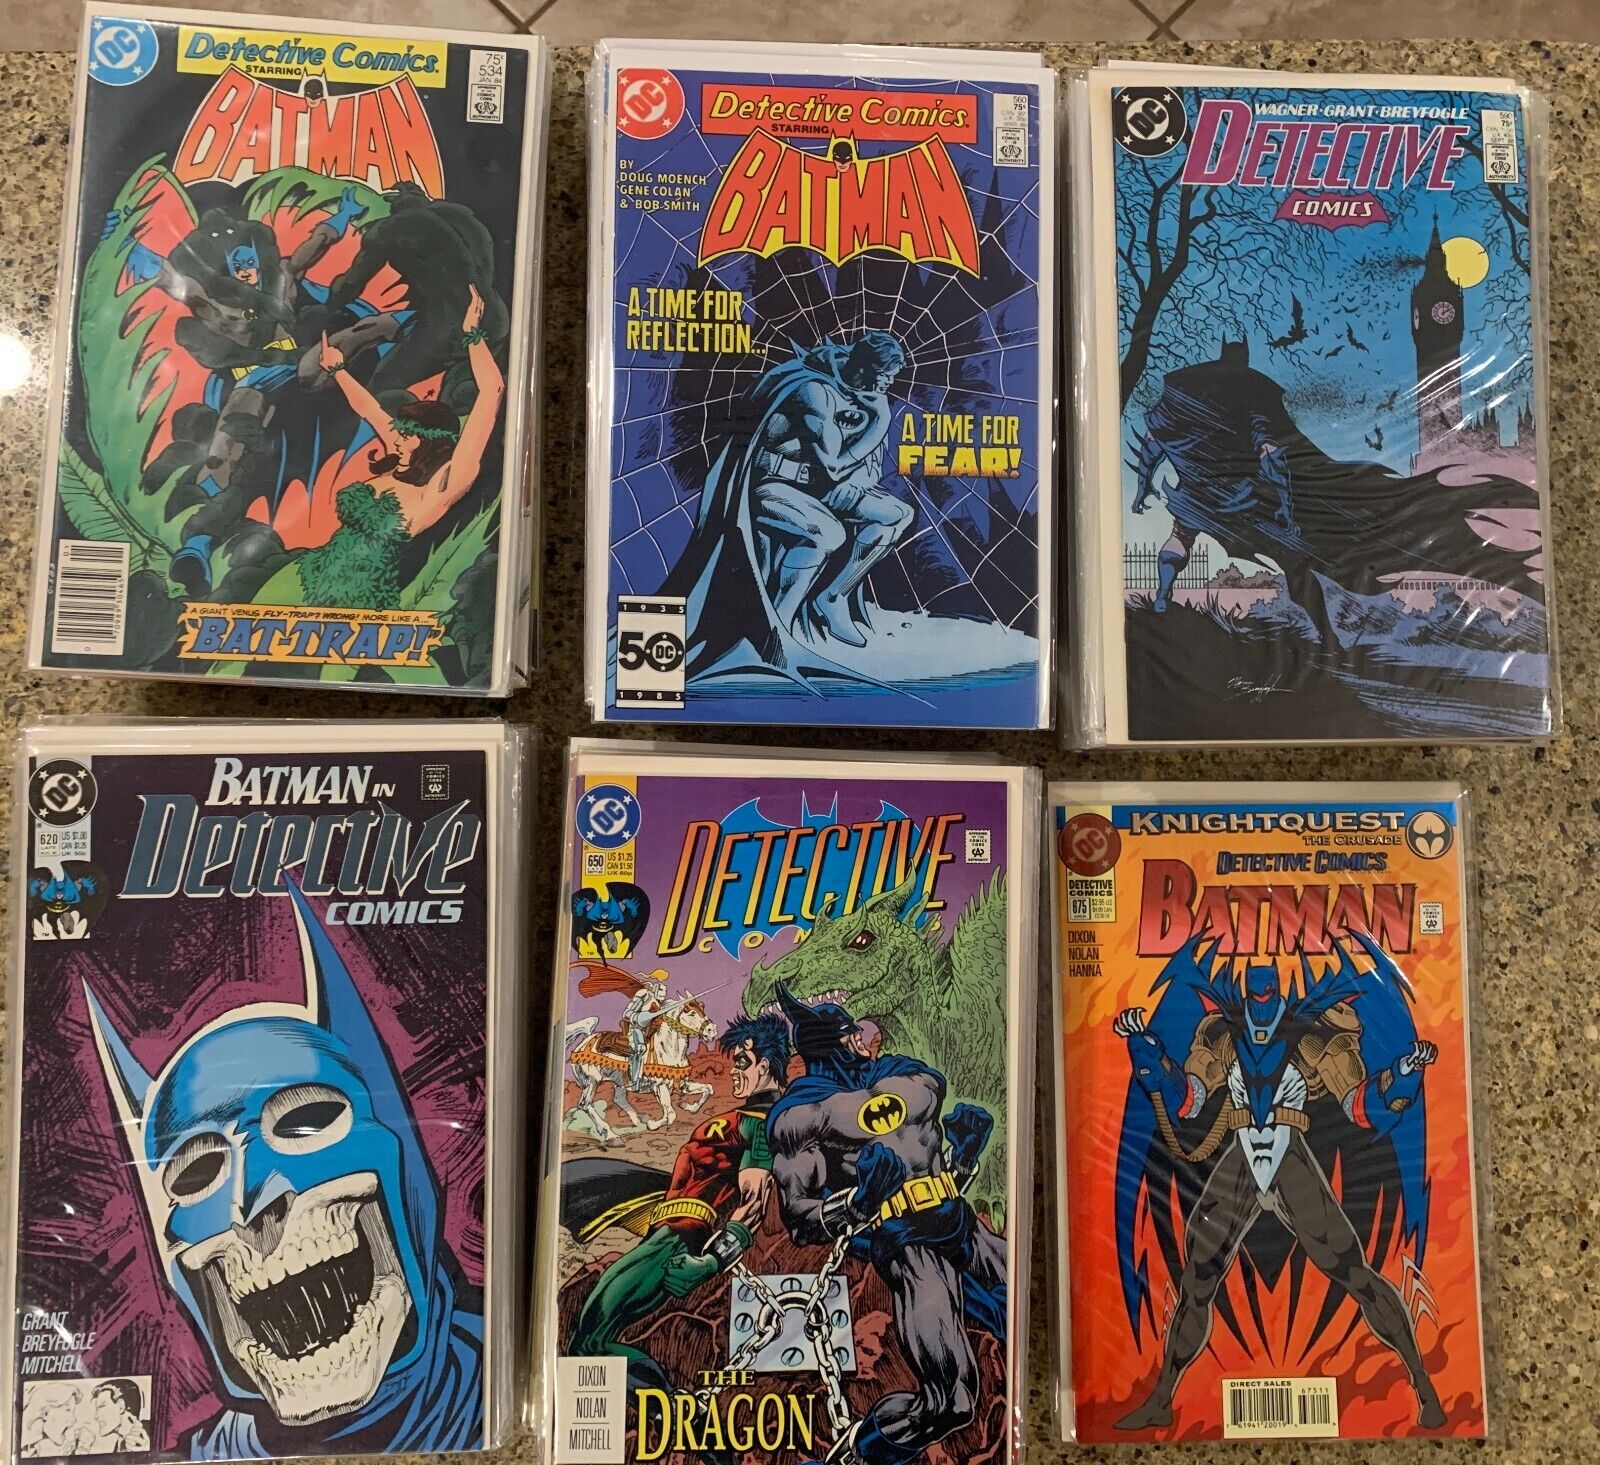 DC Comics: Detective Comics (1938), Issues 534-680, Annuals 1-7 (155 Total)